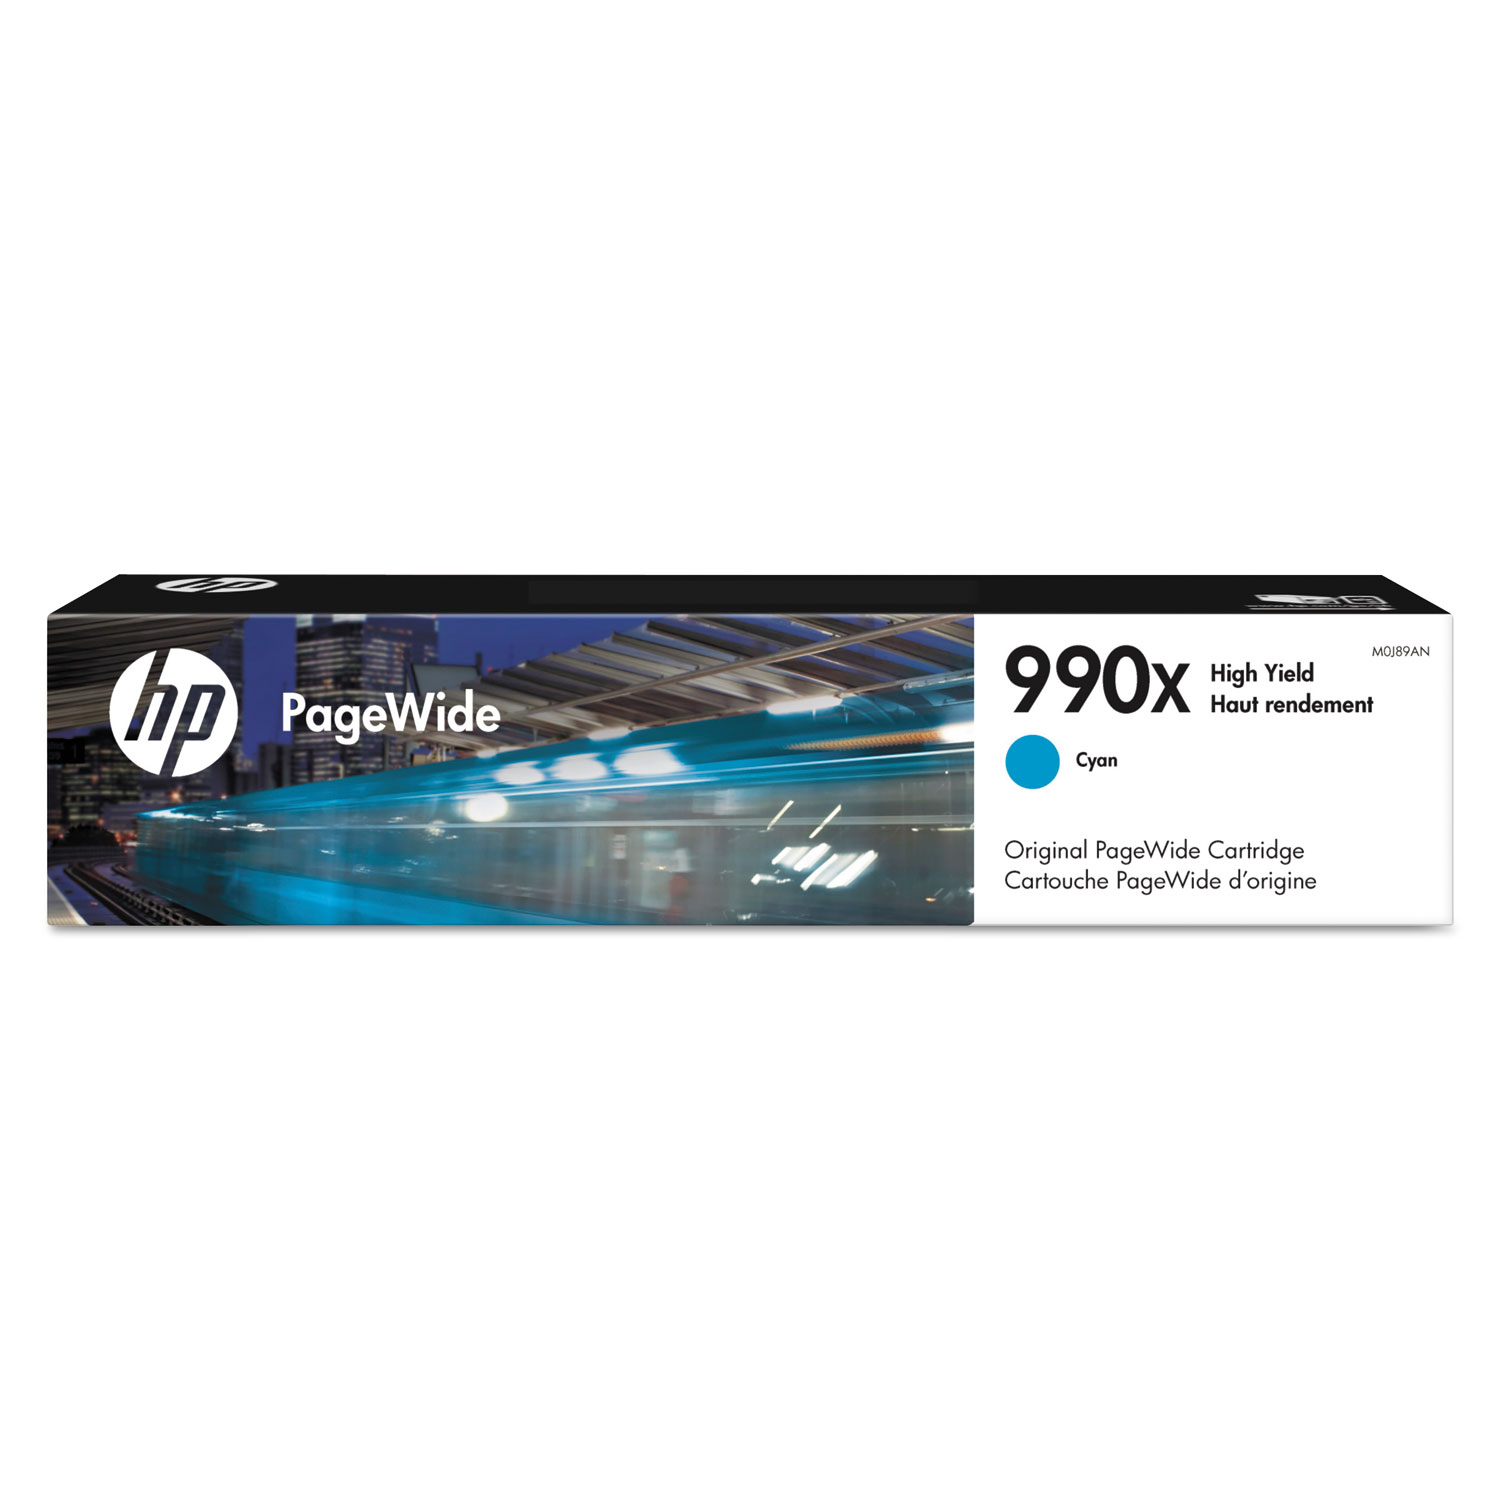  HP M0J89AN HP 990X, (M0J89AN) High Yield Cyan Original PageWide Cartridge (HEWM0J89AN) 